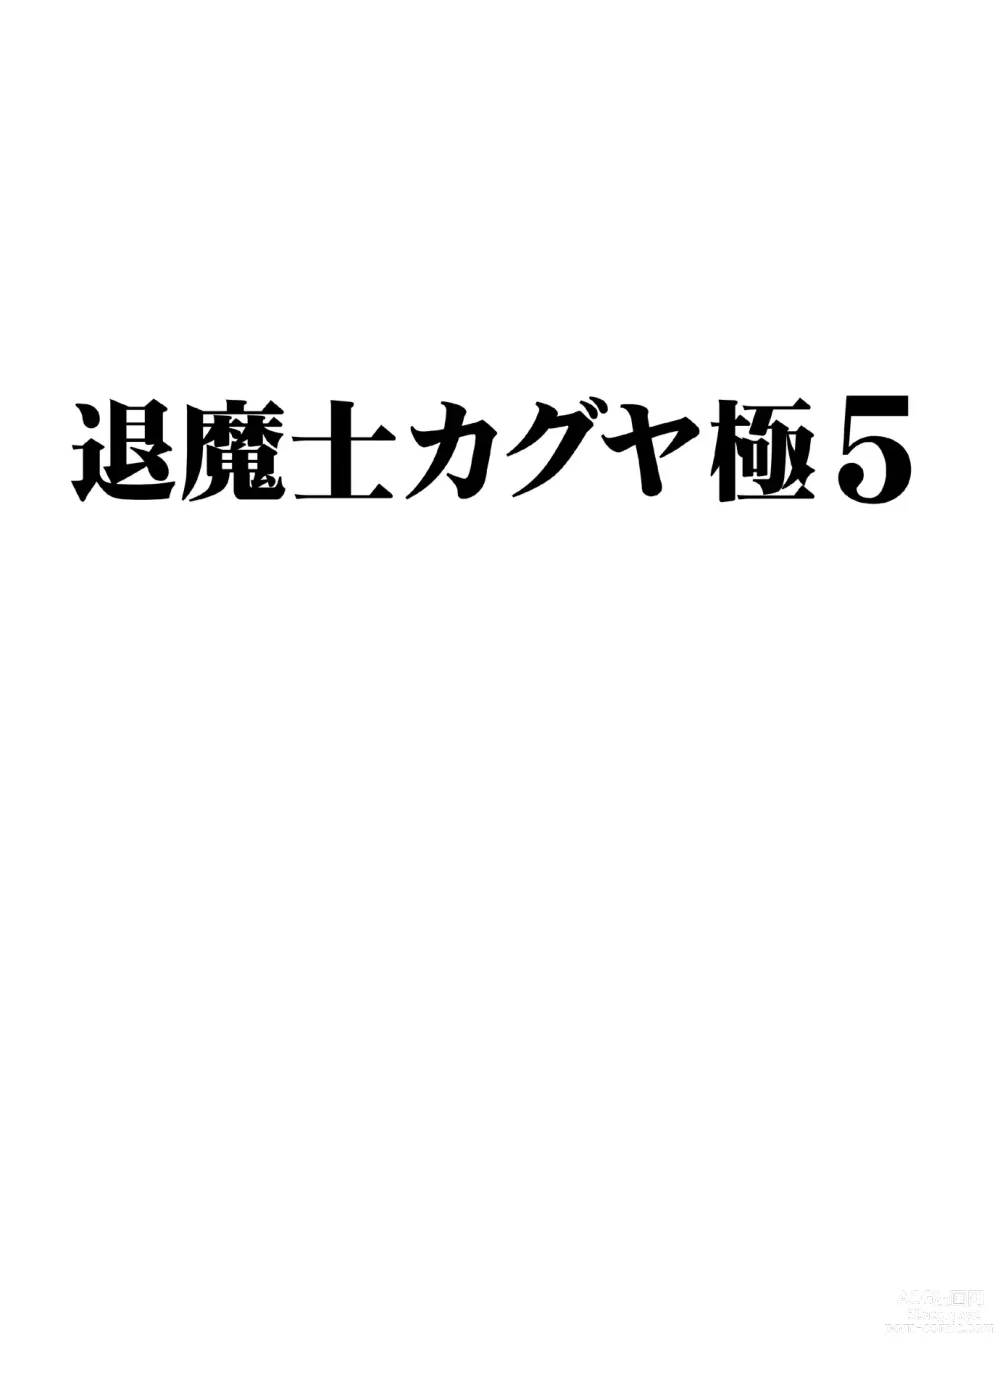 Page 2 of doujinshi Taimashi Kaguya Kyoku 5